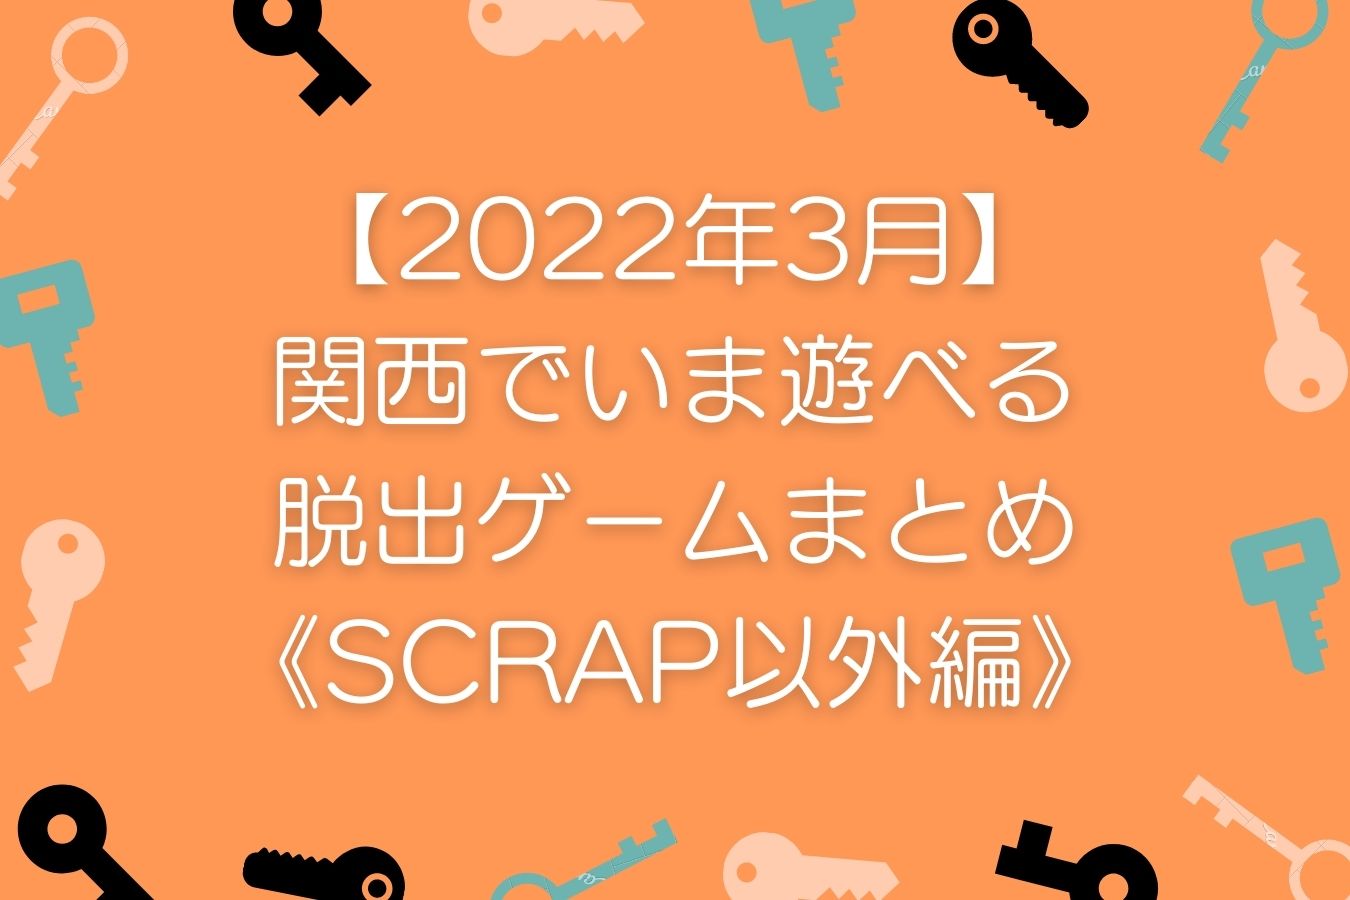 【2022年3月】関西でいま遊べる脱出ゲームまとめ《SCRAP以外編》